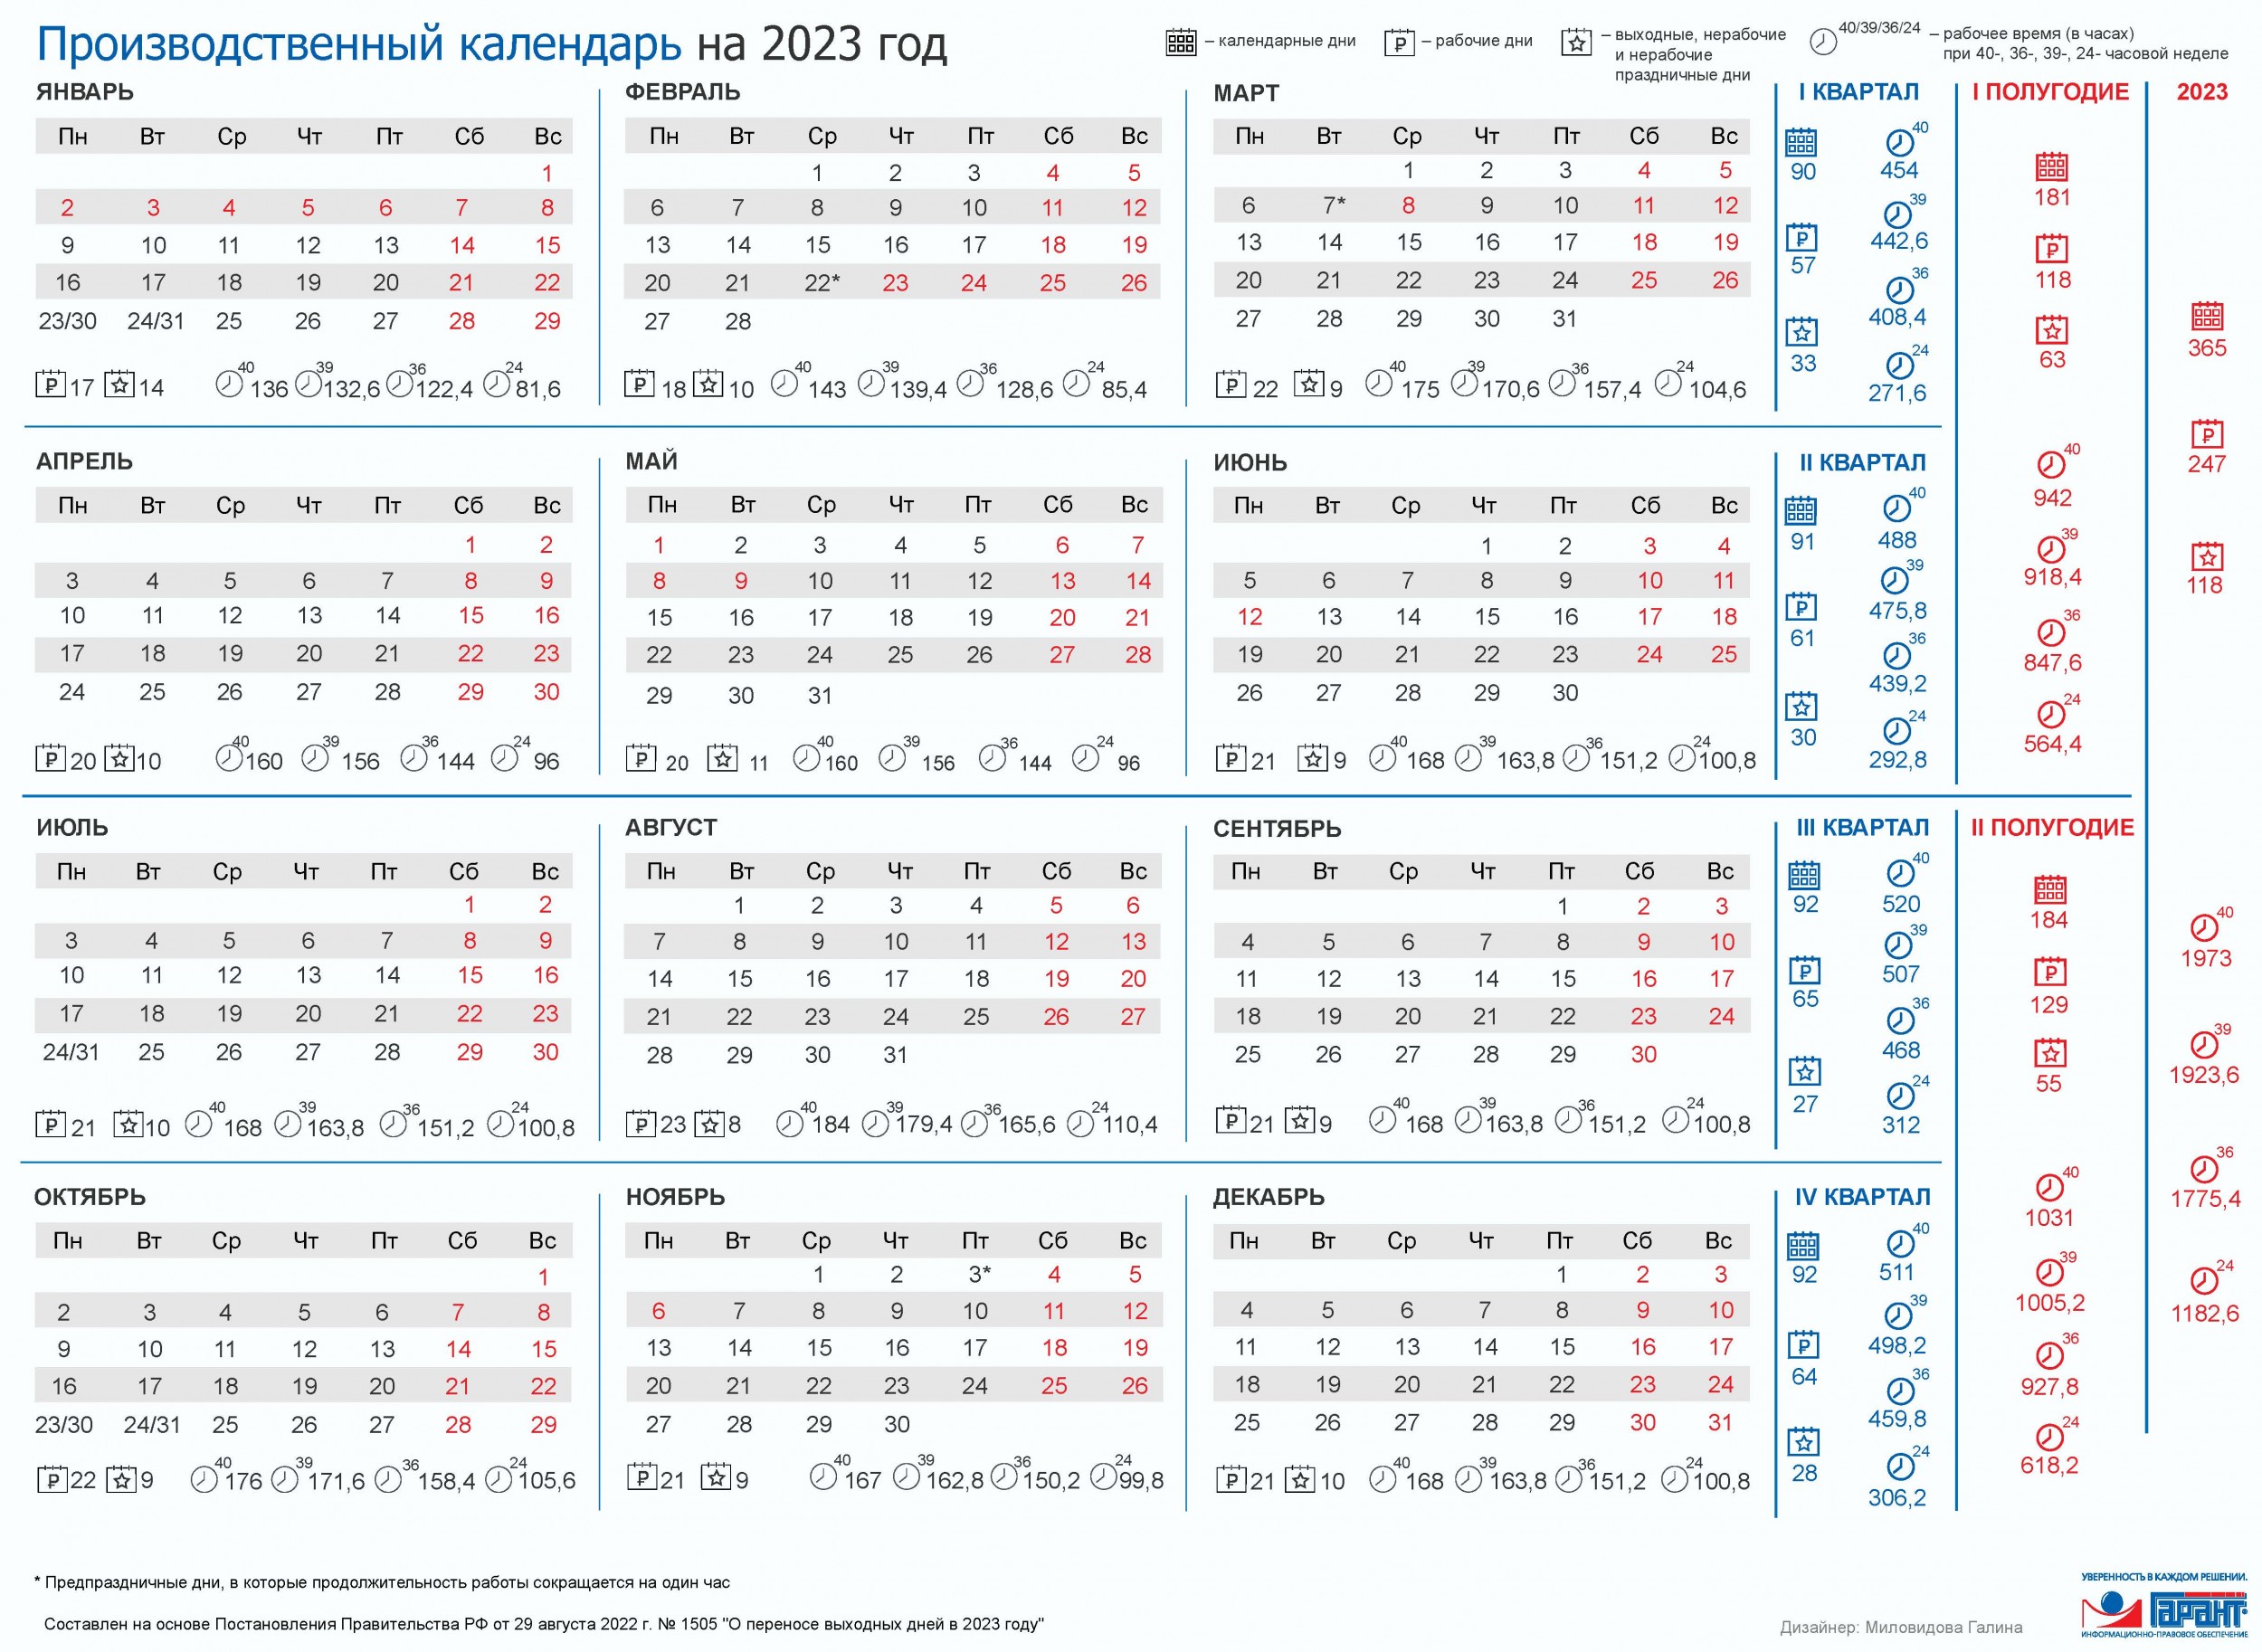 Производственный календарь на 2021 год для пятидневной рабочей недели